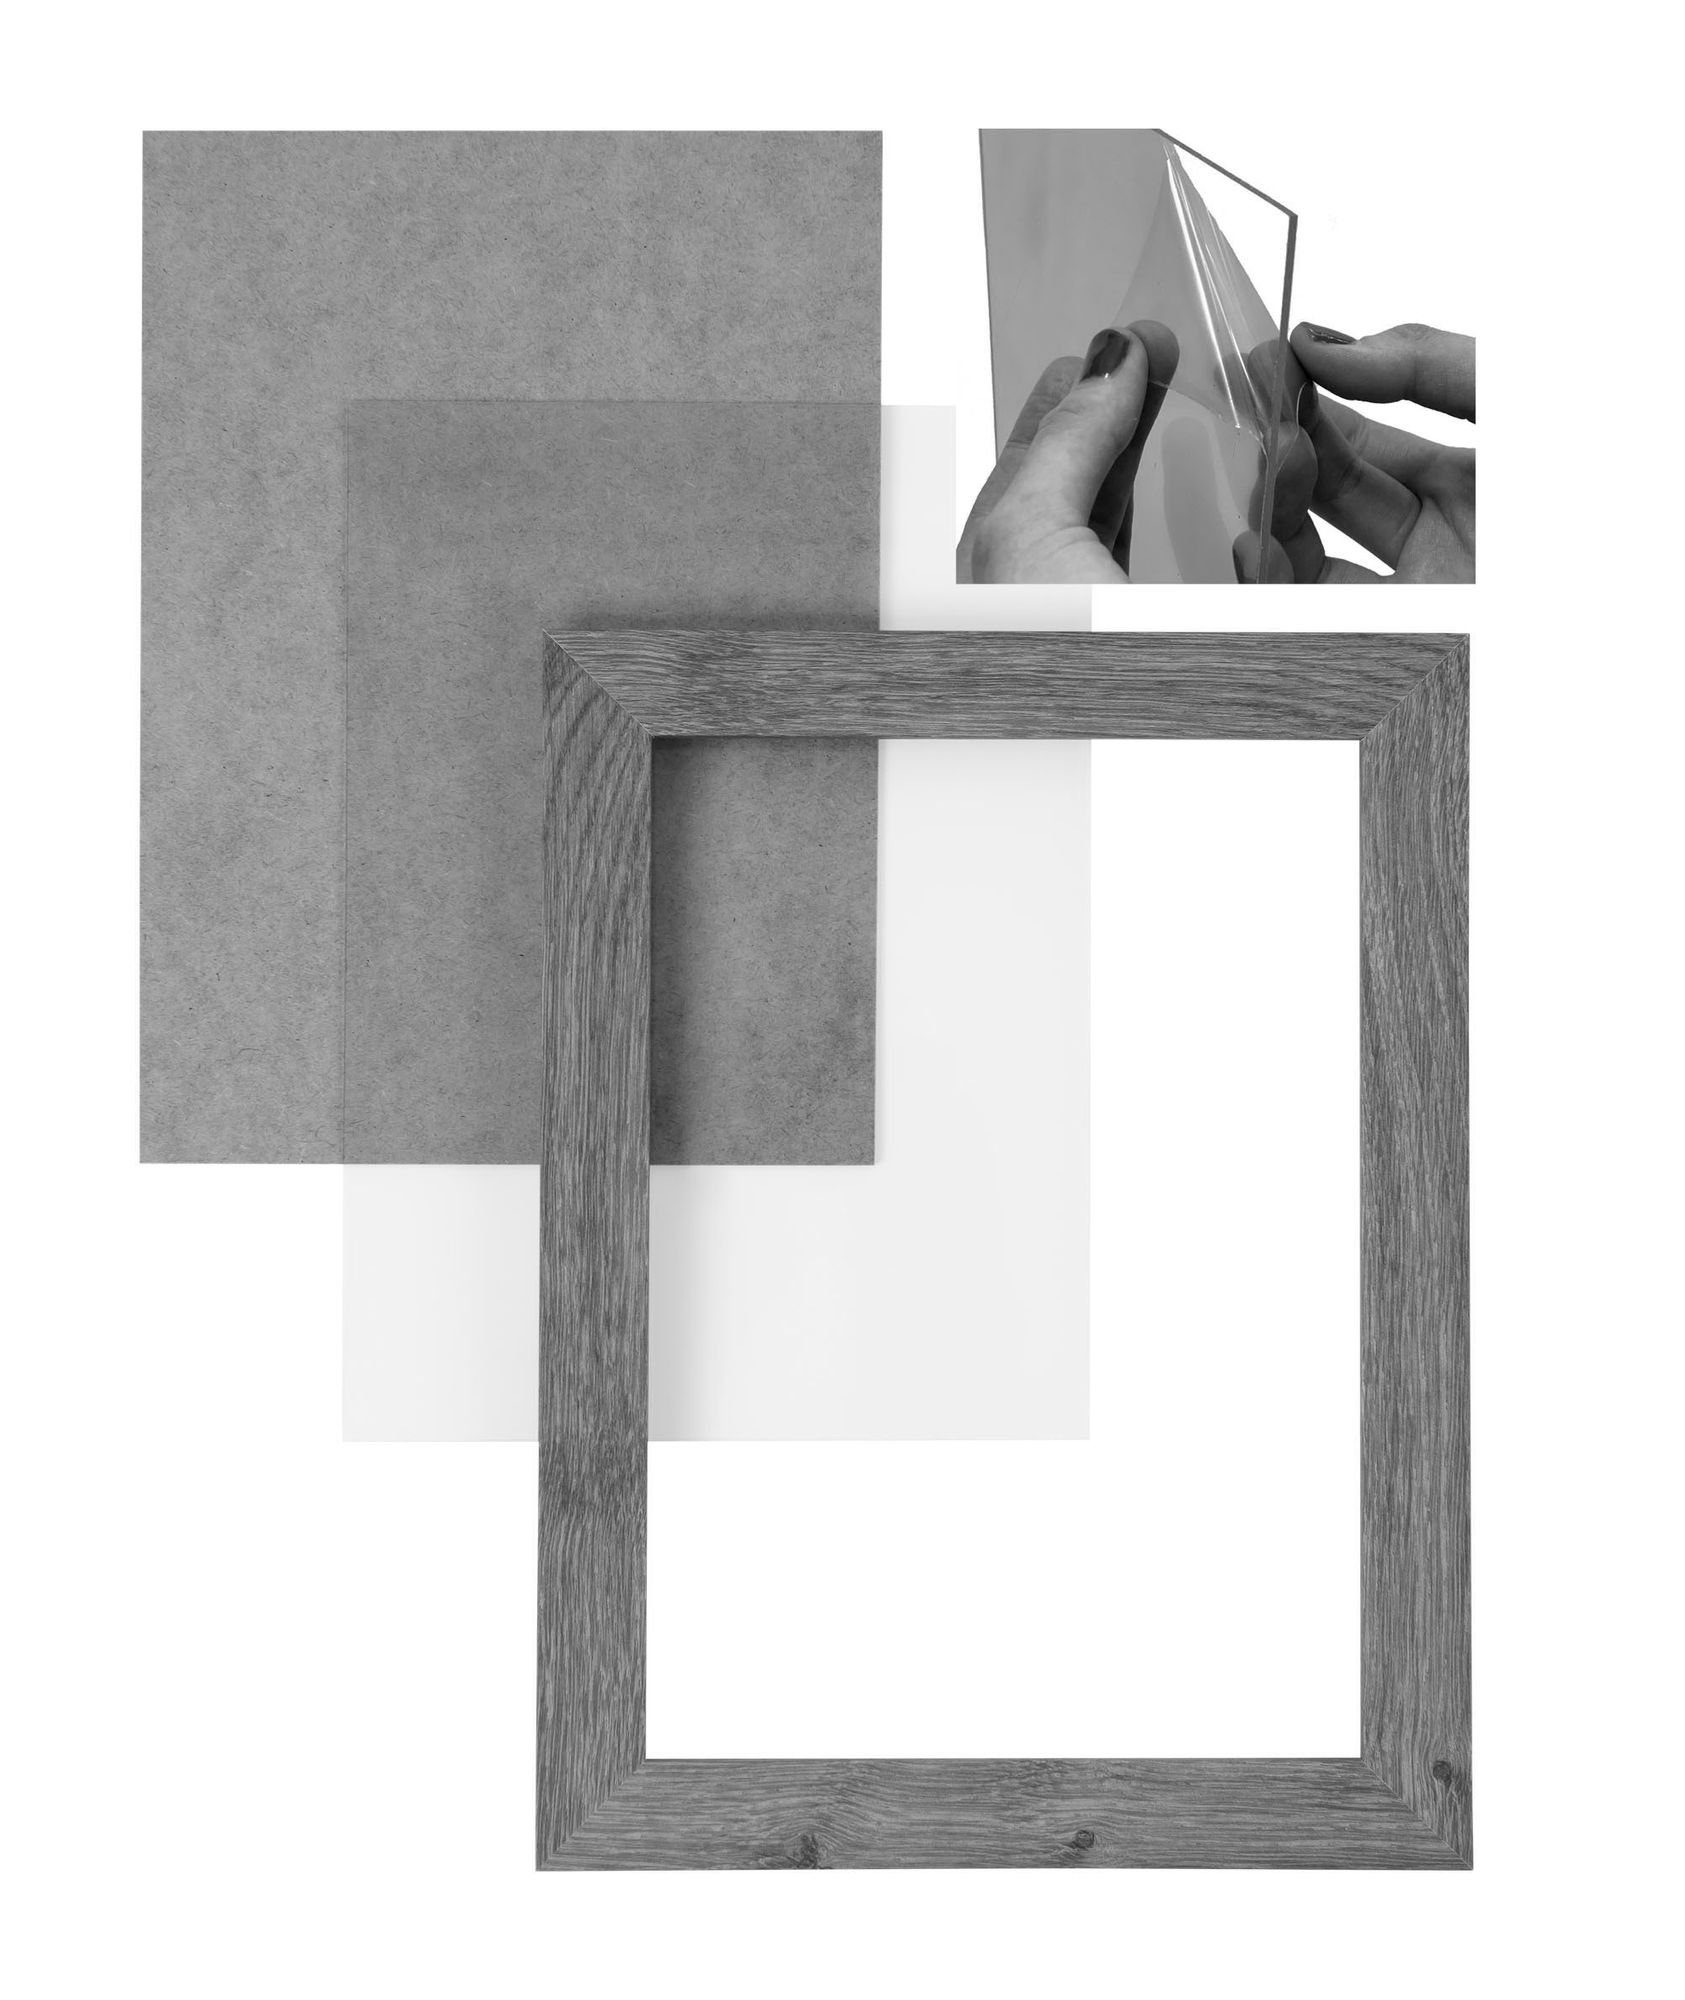 Clamaro Moderner Aufhänger FSC® eckiger Rückwand inkl. CLAMARO und eiche Holz in Bilderrahmen handgefertigt altholz Acrylglas, 41x54 Maß 'Collage' Bilderrahmen Rahmen MDF nach